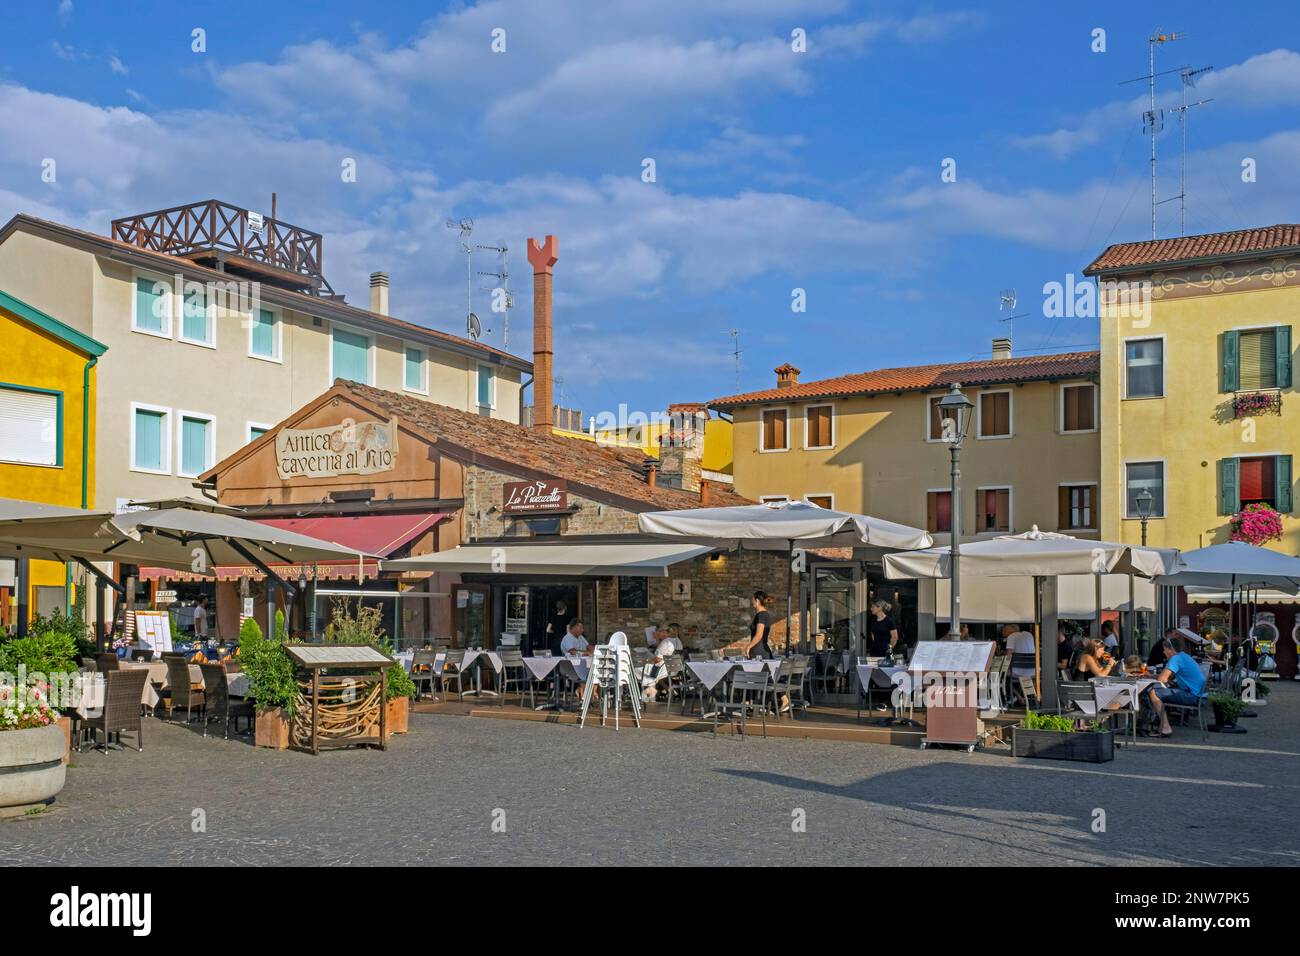 Turisti presso ristoranti nel centro storico di Caorle, città costiera della città metropolitana di Venezia, Veneto, Italia settentrionale Foto Stock